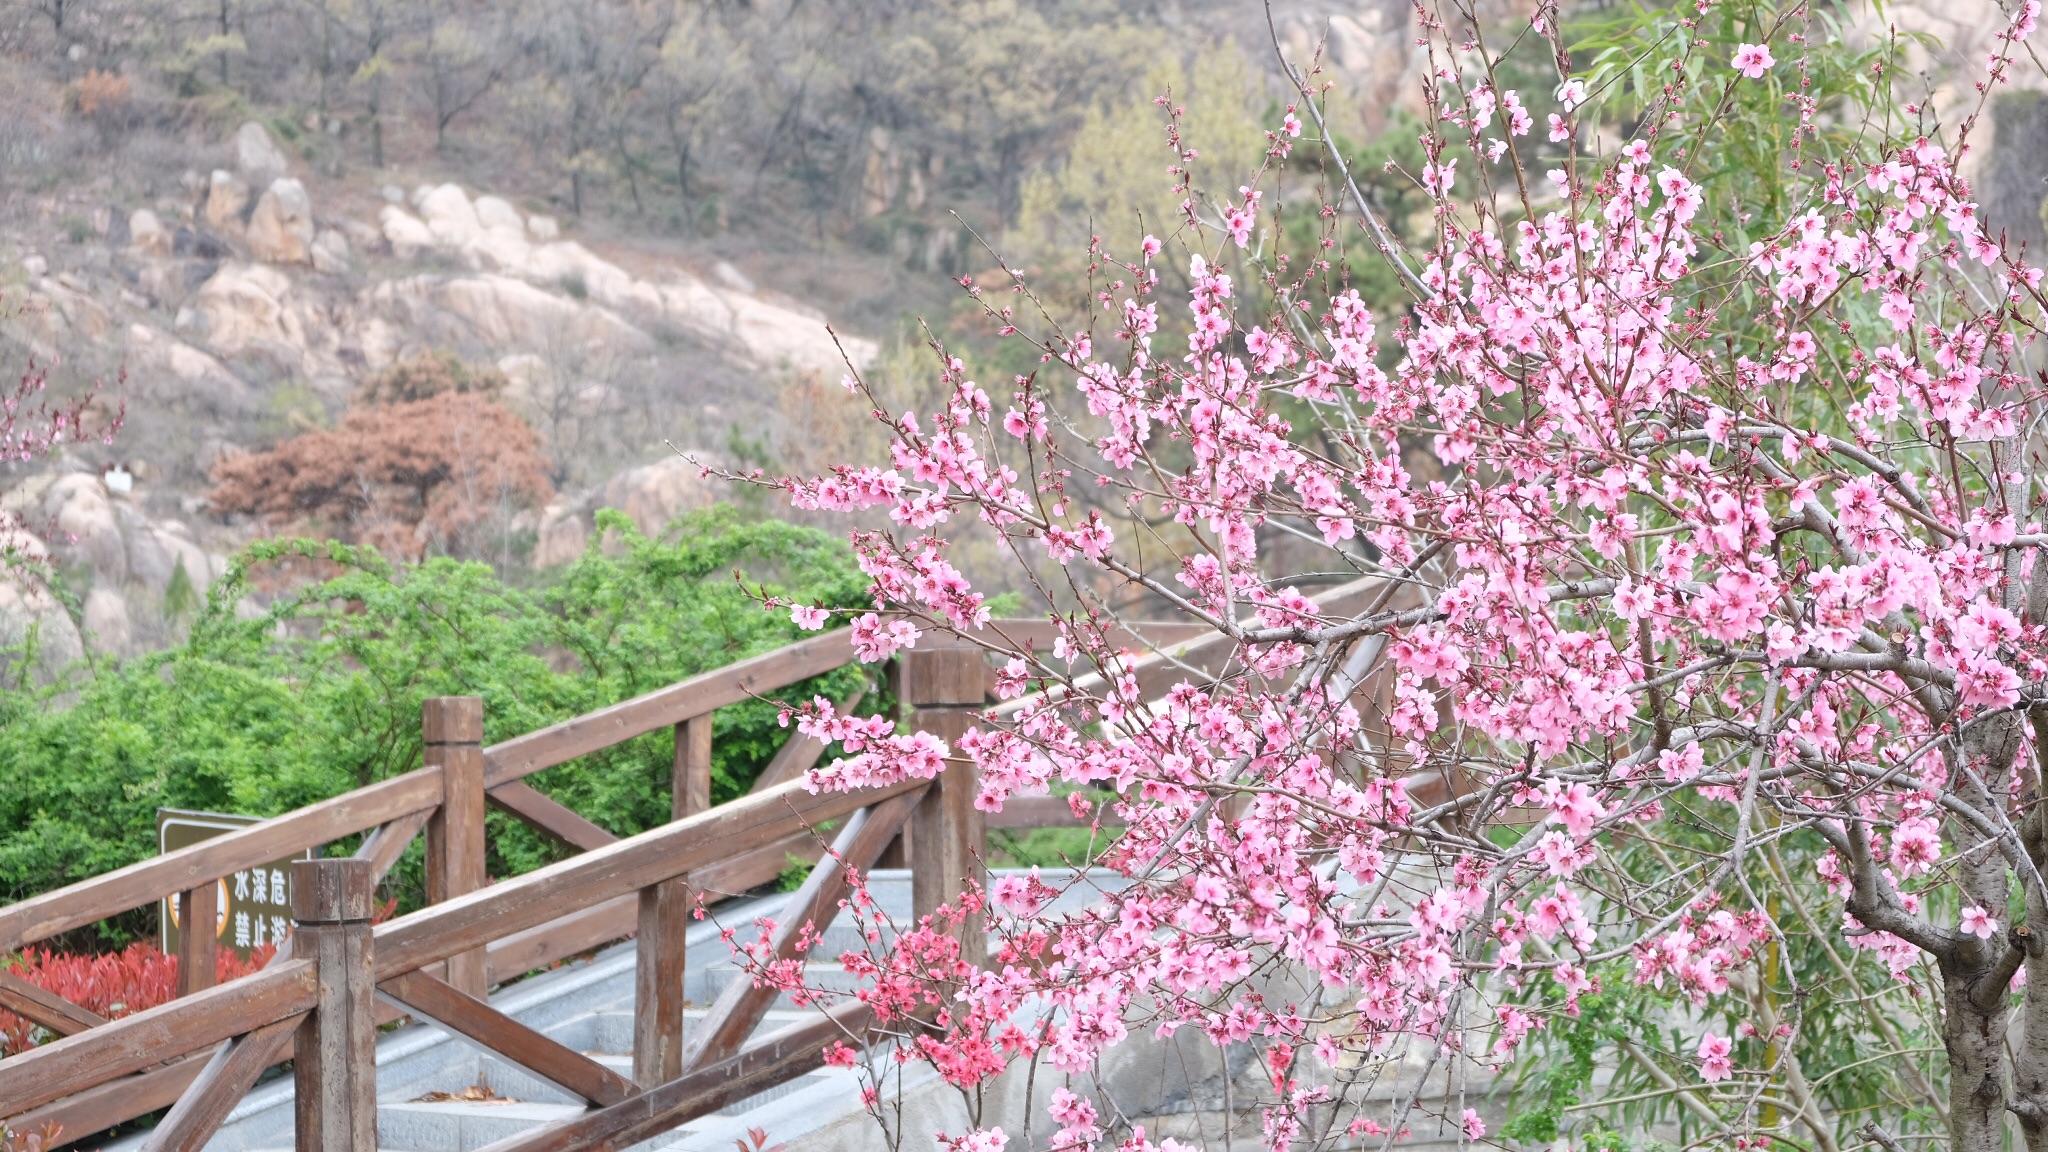 桃花涧是连云港最出名的景区之一,这里有着十分优美秀丽的自然景色,会